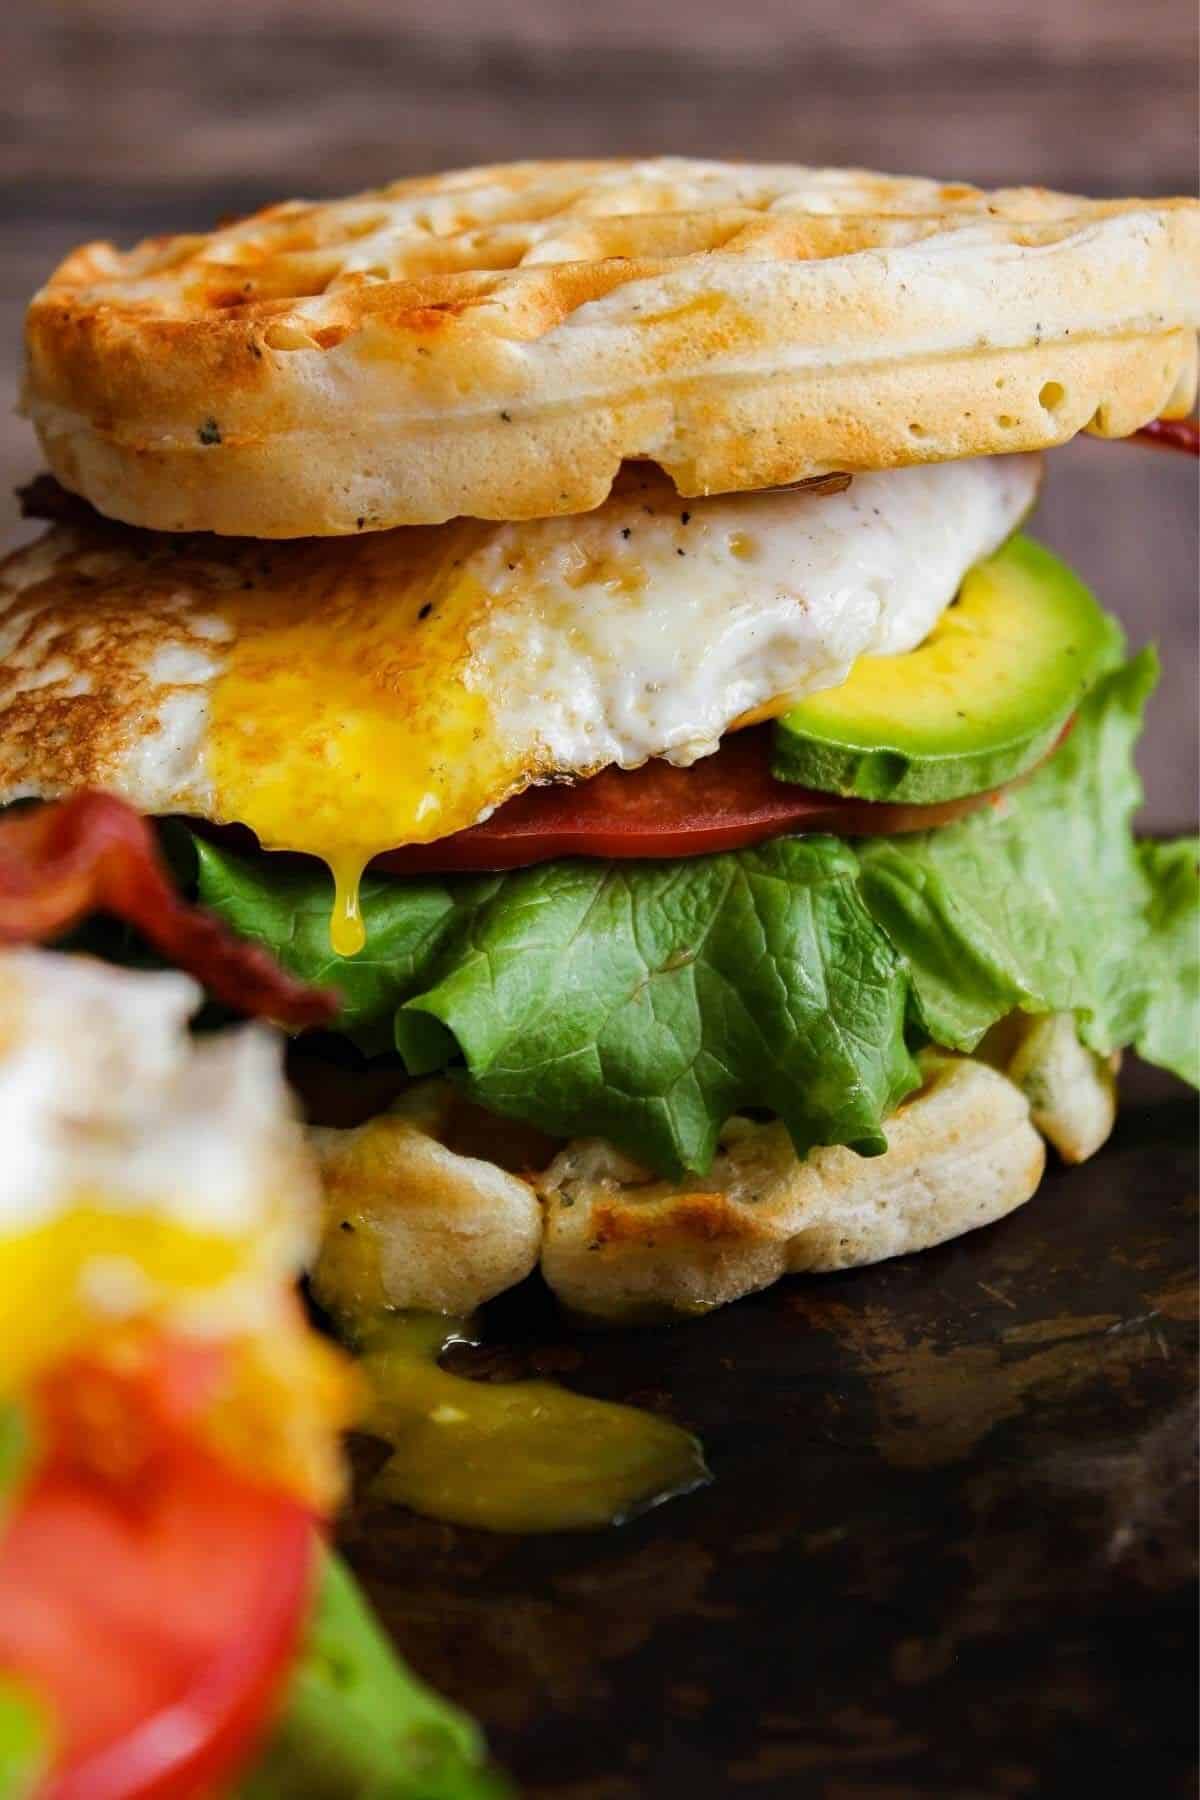 Breakfast waffle sandwich with egg yolk dripping.